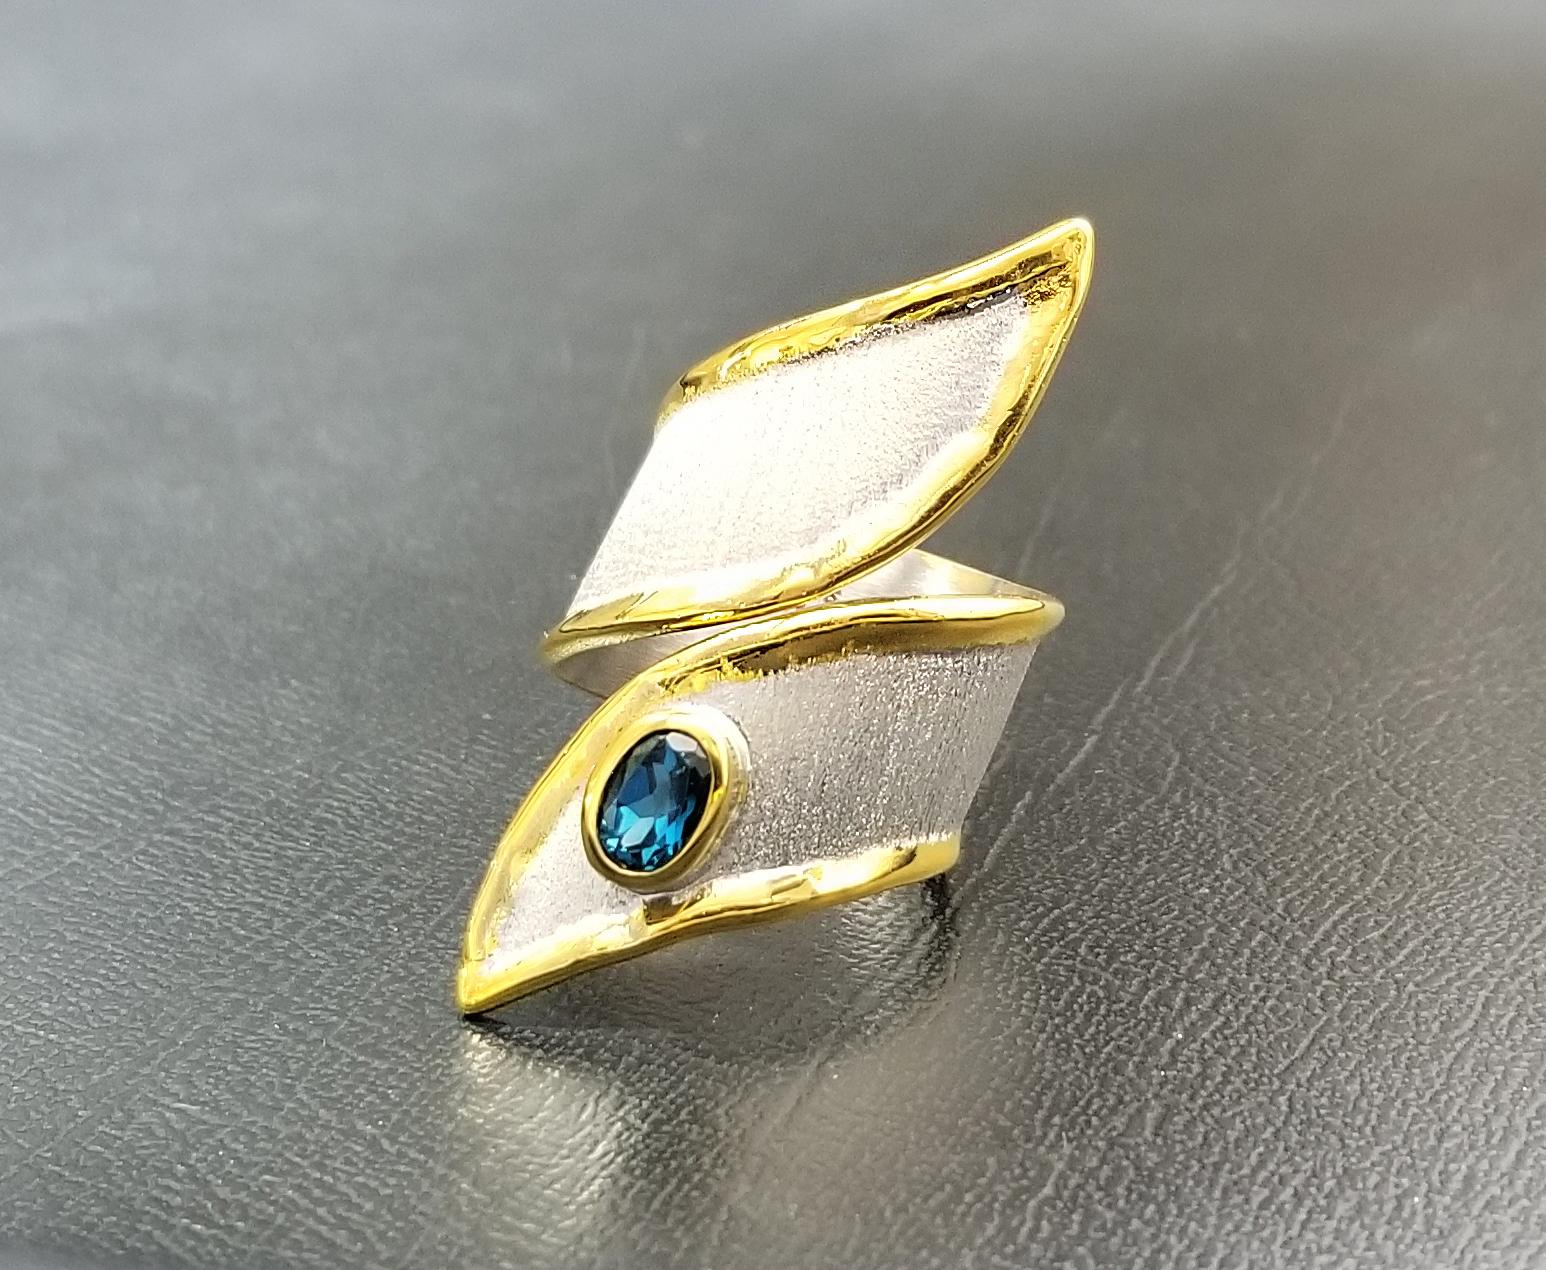 Yianni Creations präsentiert einen breiten handgefertigten Ring aus der Midas Collection, der aus reinem 950er Silber gefertigt und mit Palladium überzogen ist, um den Elementen zu widerstehen. Die Flüssigkeitsränder sind mit einer dicken Schicht